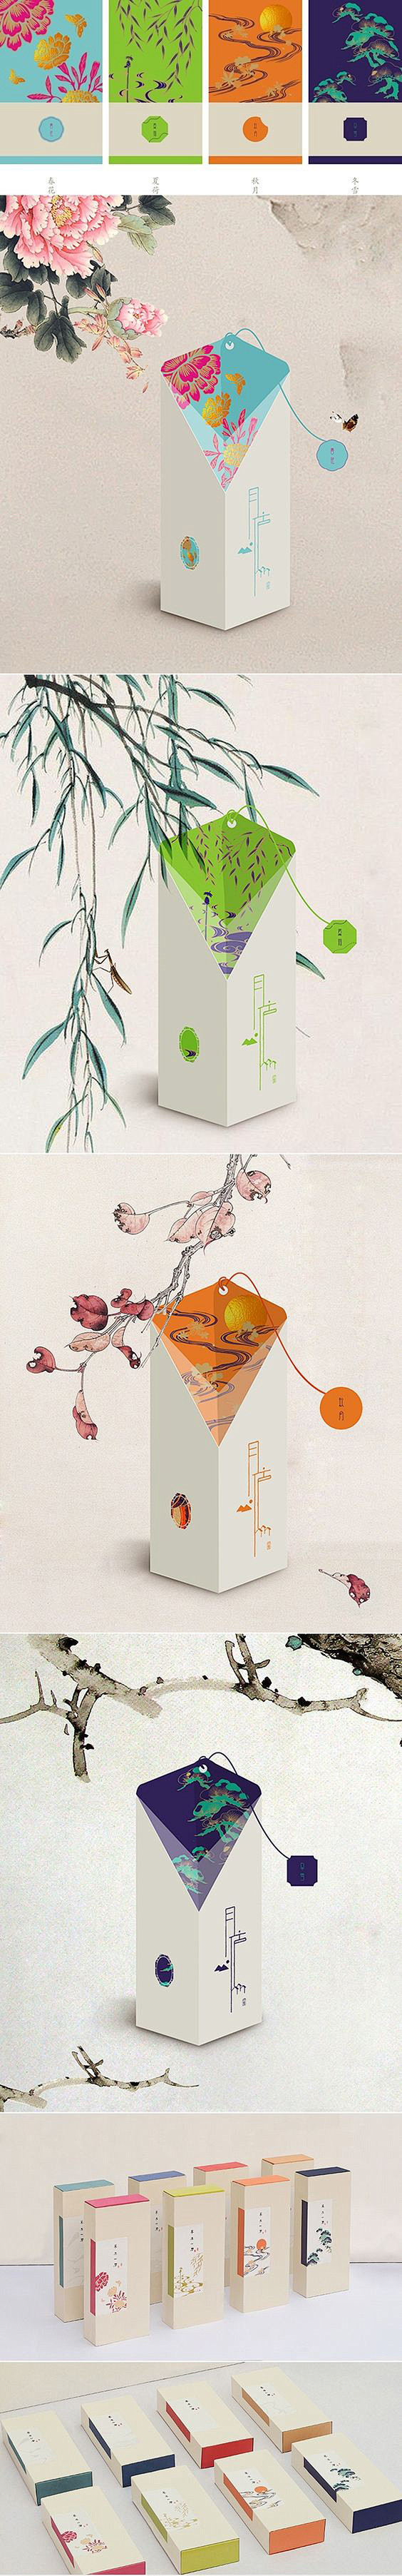 创意茶叶包装设计欣赏 (8)